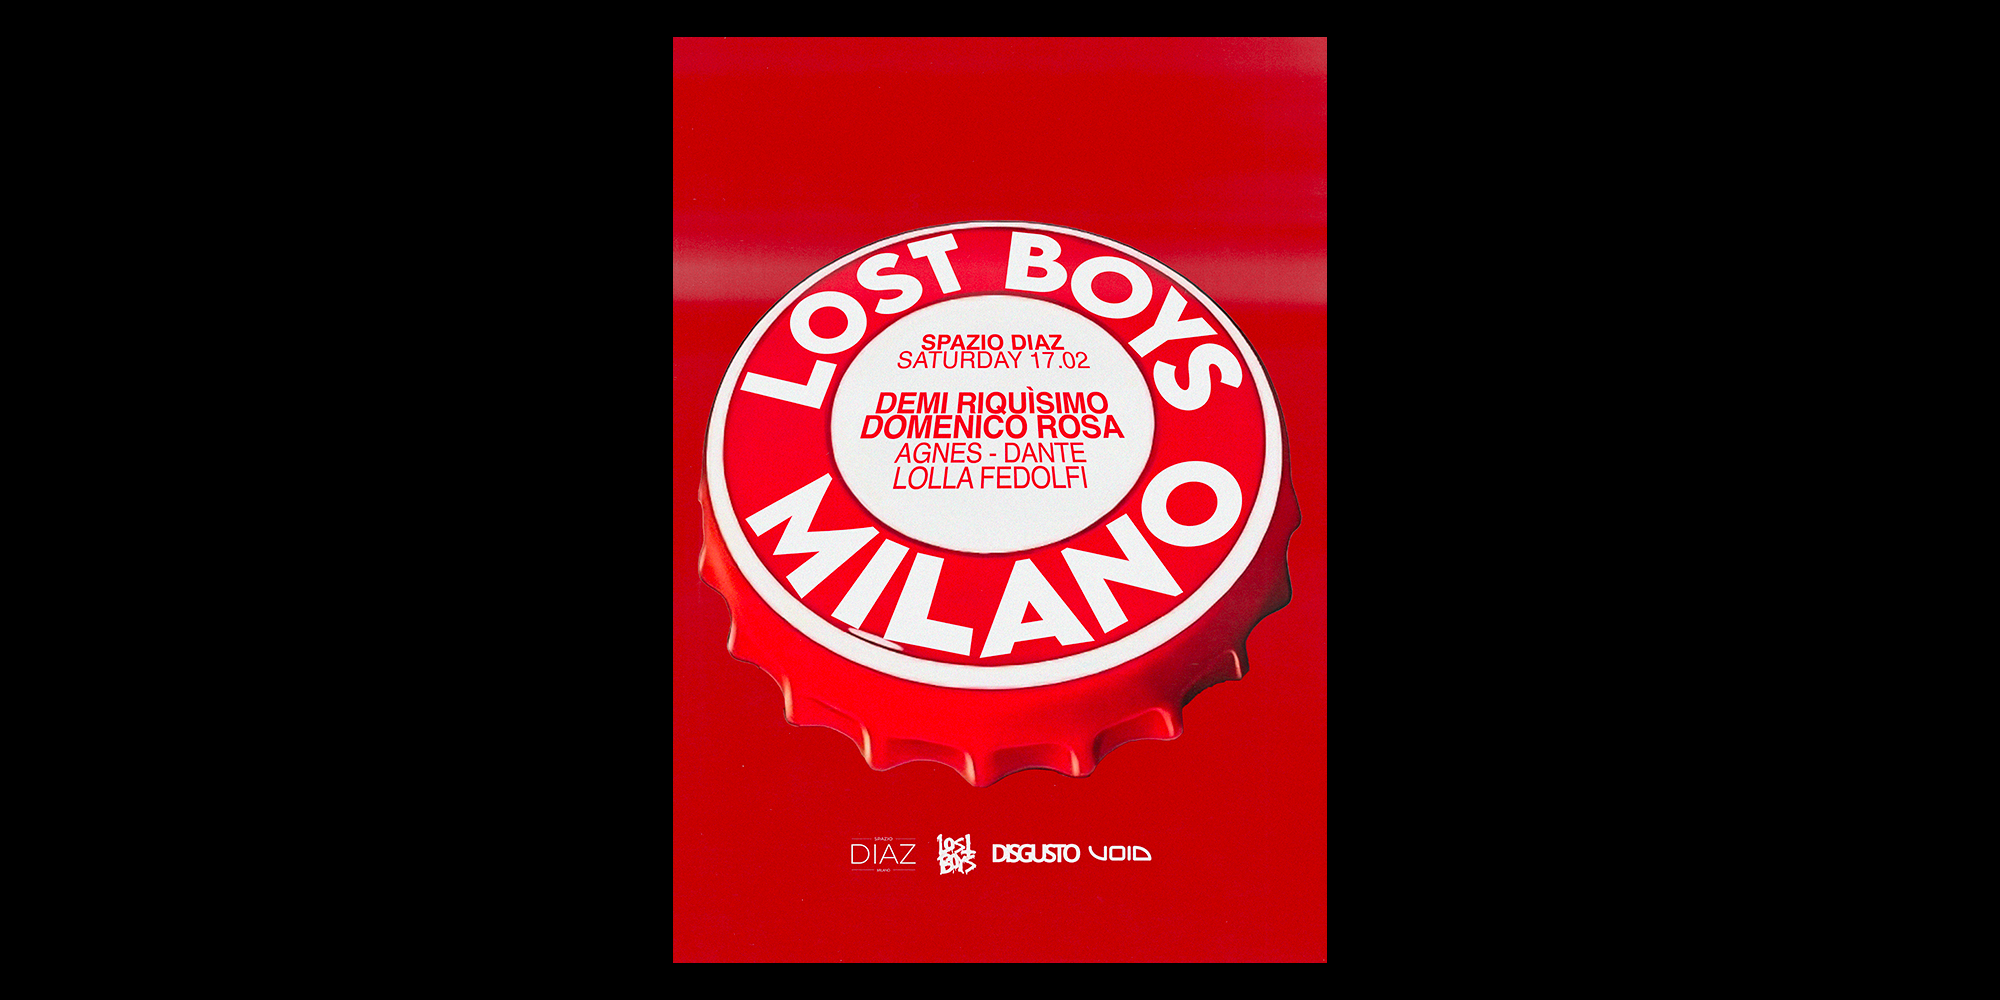 Lost Boys Milano - Página frontal